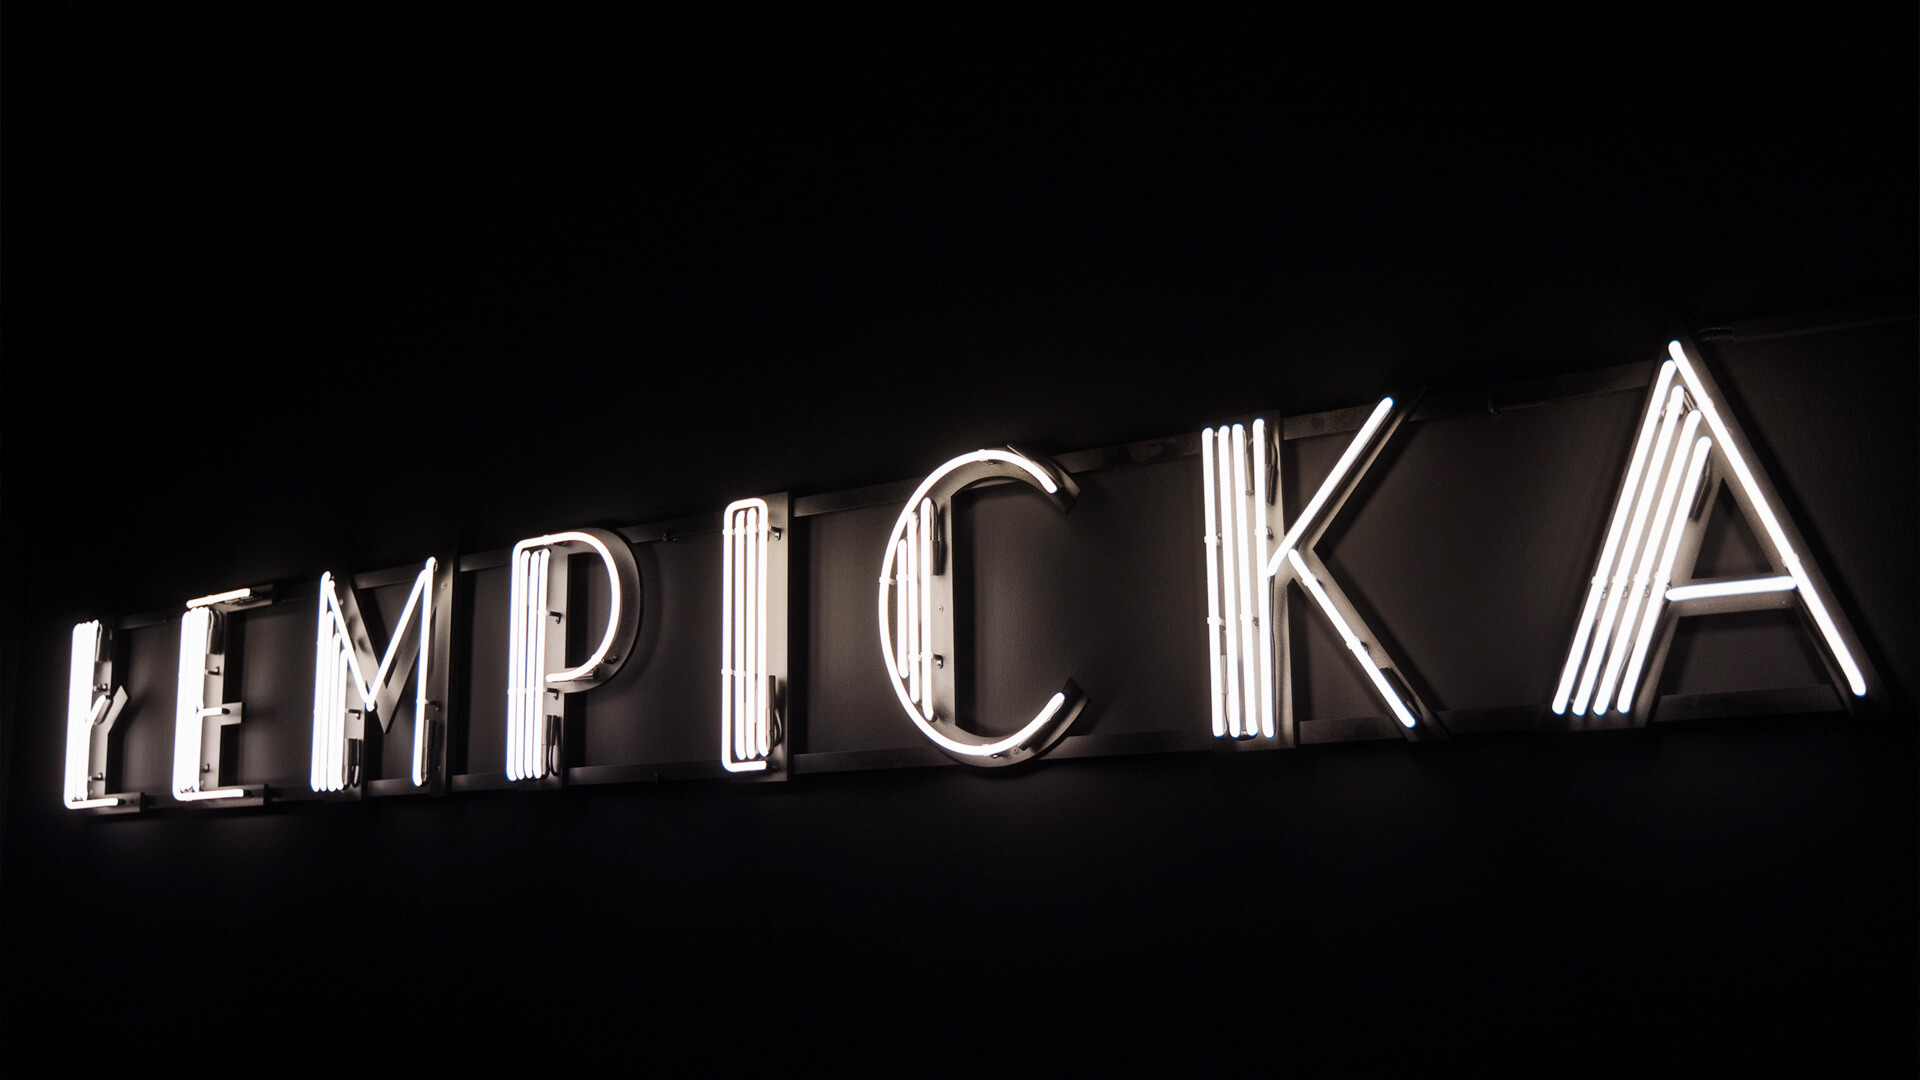 Neon Tamara Lempicka - Tentoonstelling met neon teken in Krakau museum